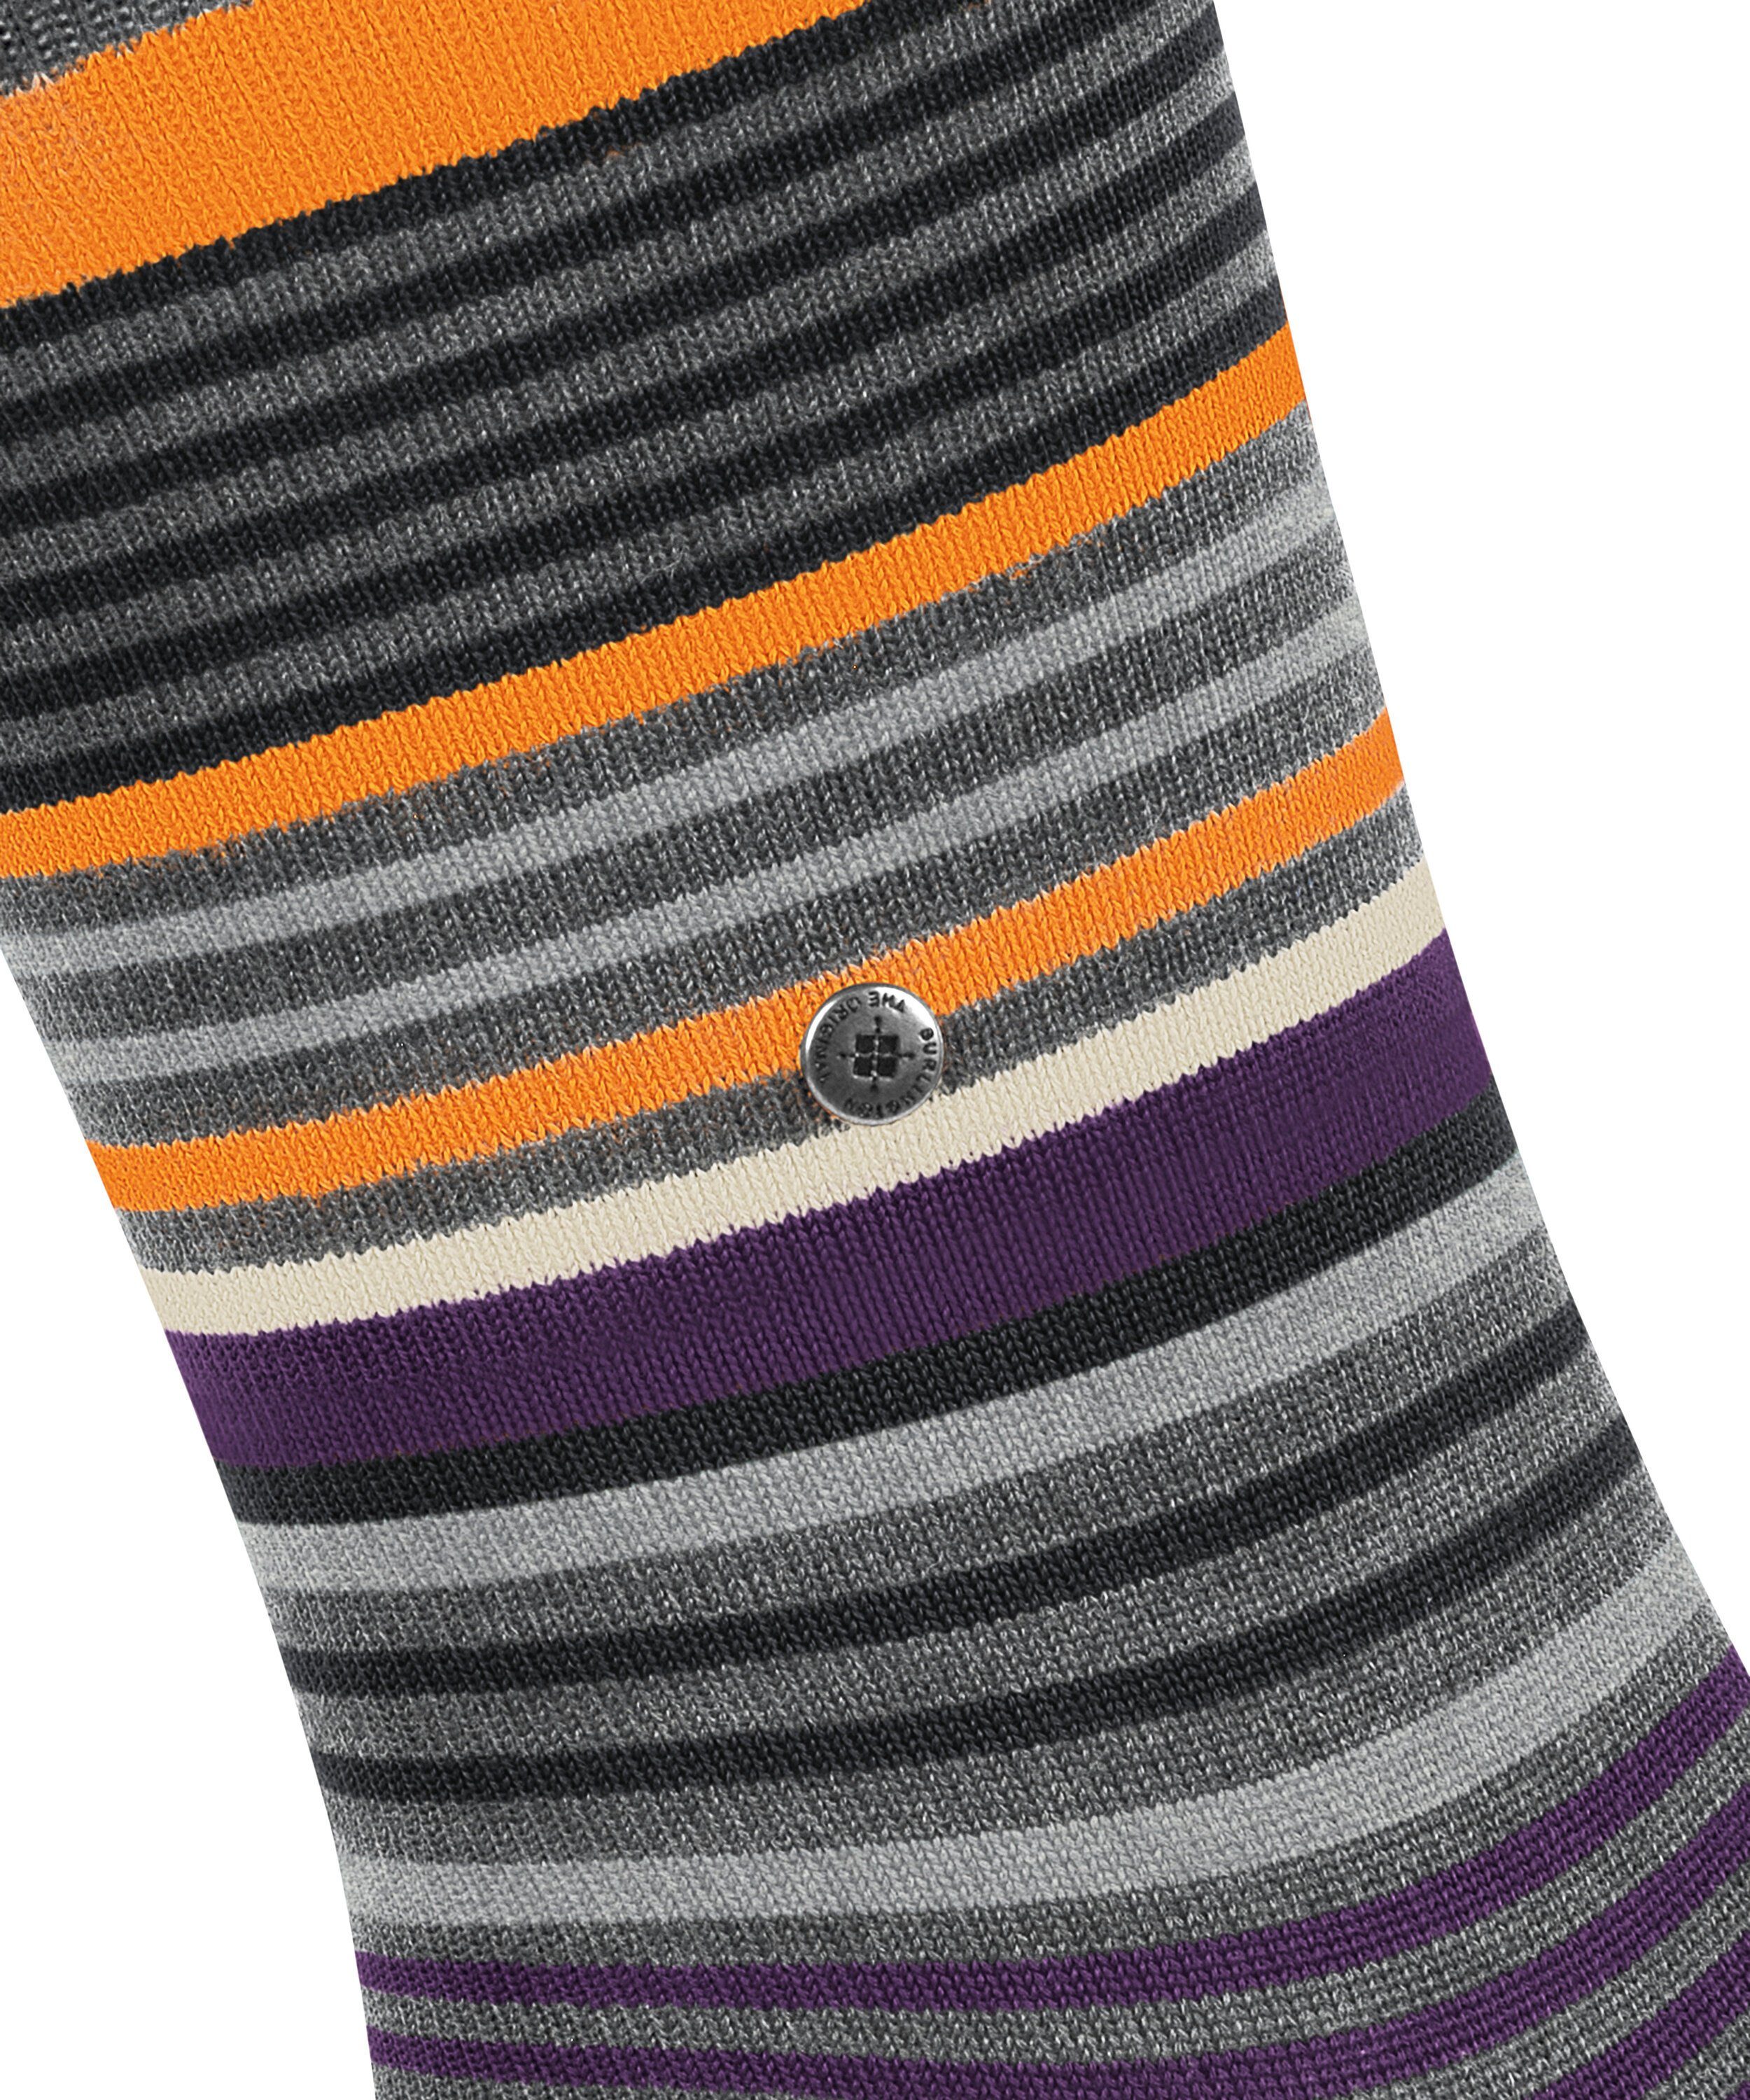 Stripe Burlington grey Socken (1-Paar) dark (3071)